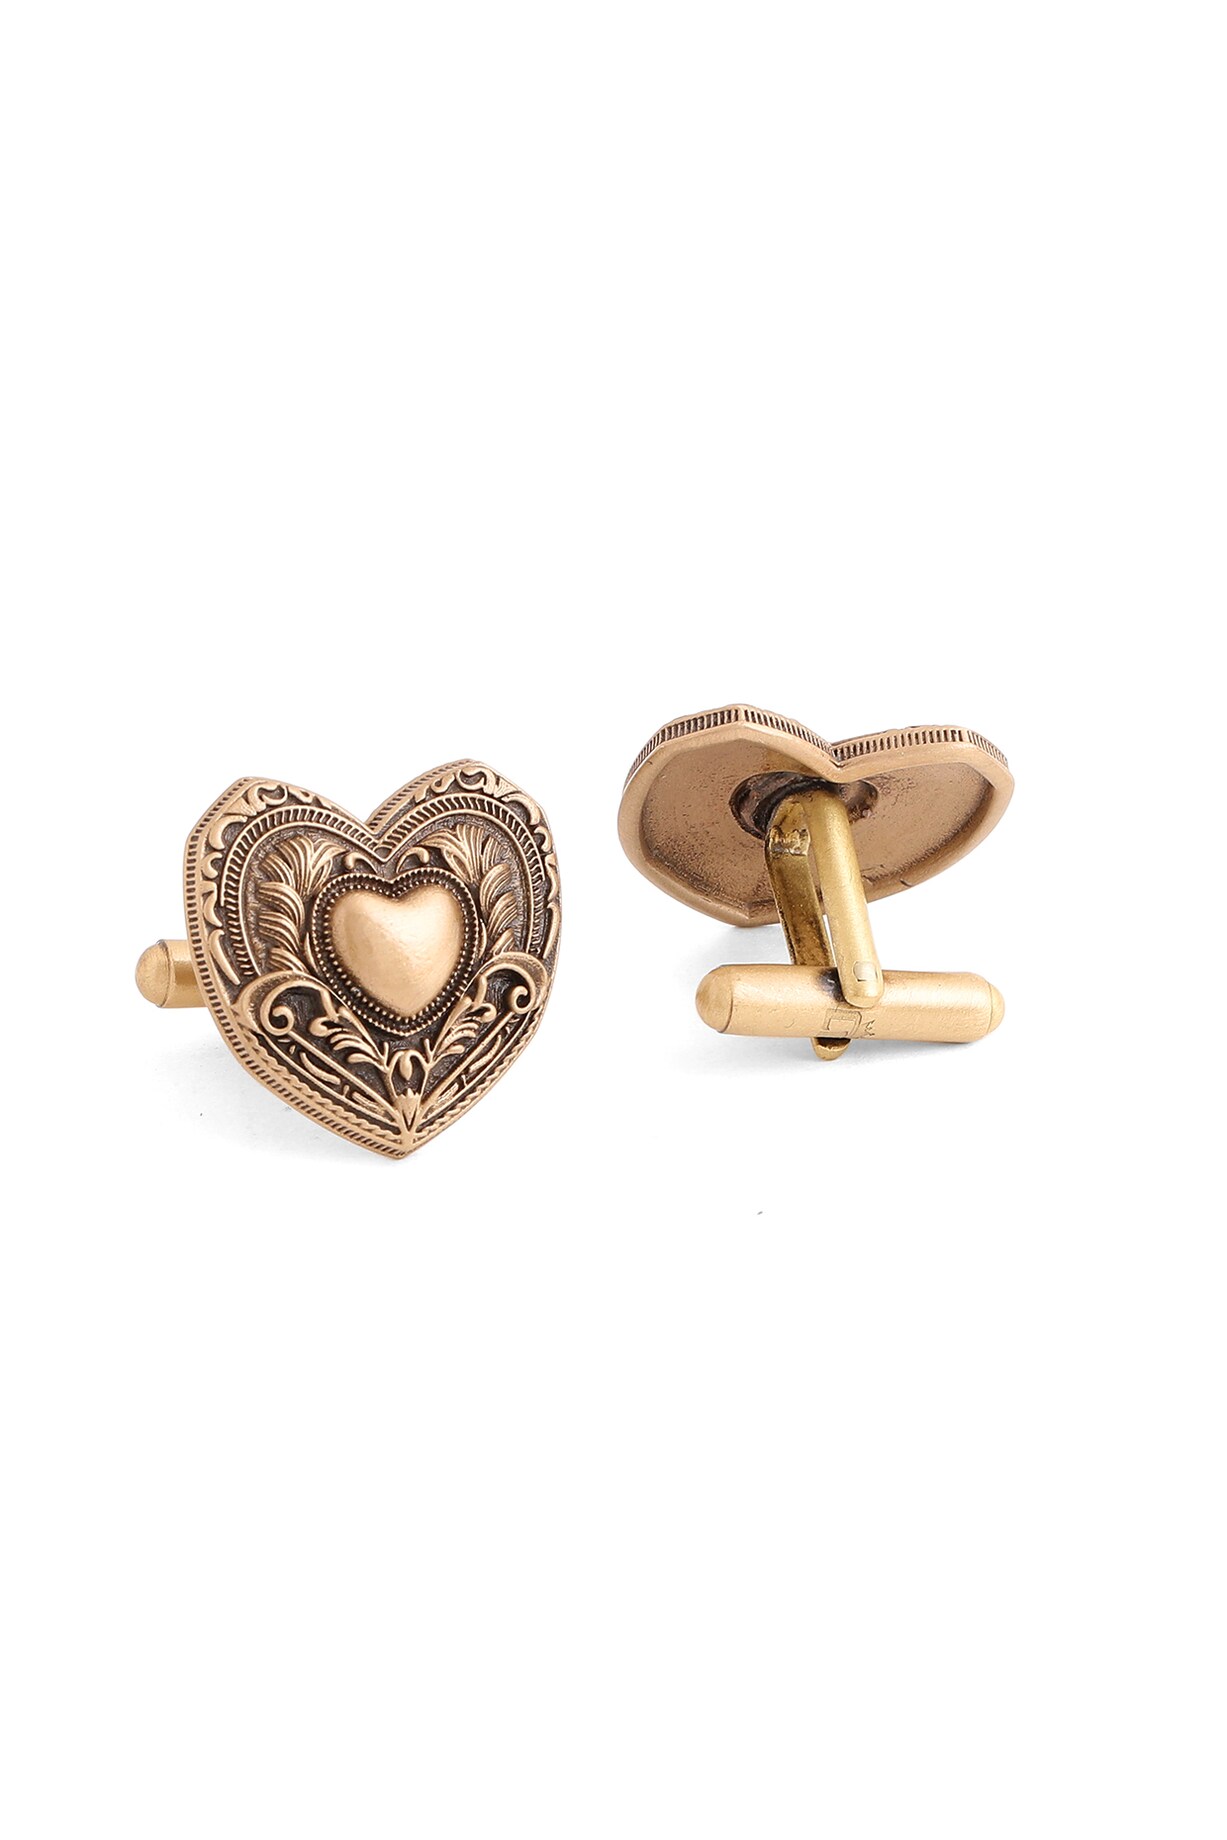 Antique Gold Brass Heart Cufflinks by Cosa Nostraa